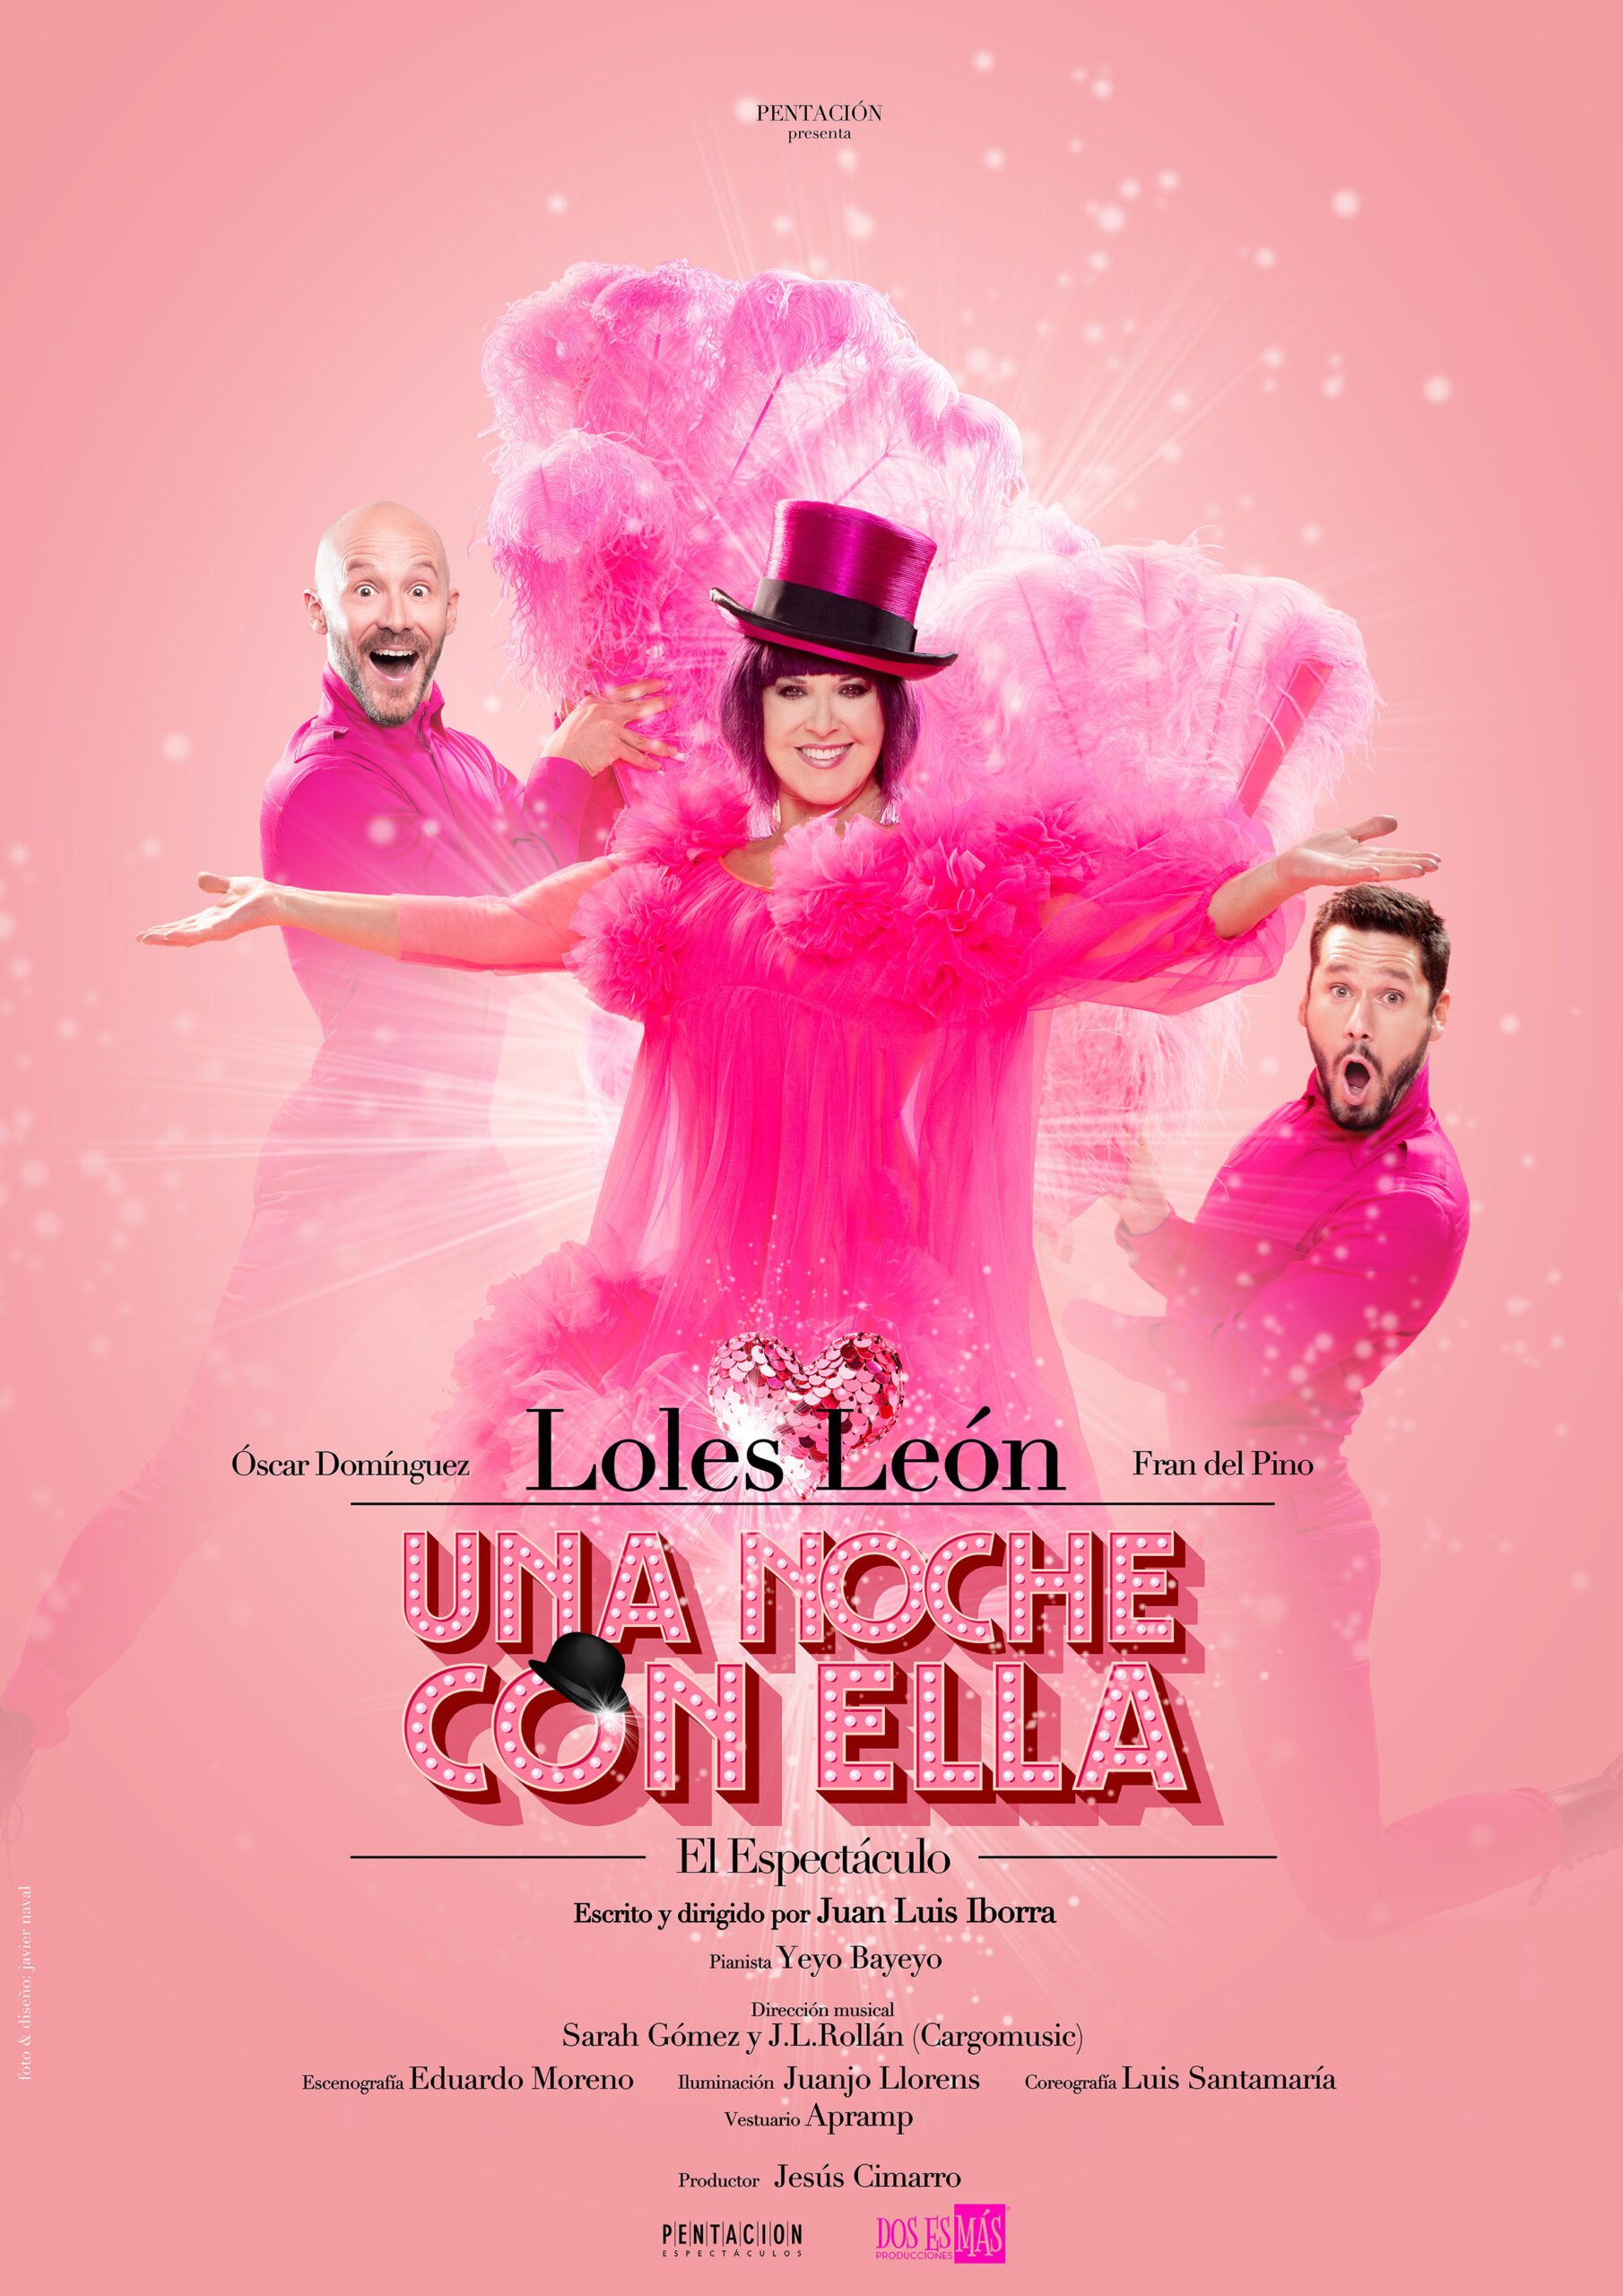 Loles León llega a Vigo con el espectáculo 'Una noche con ella'